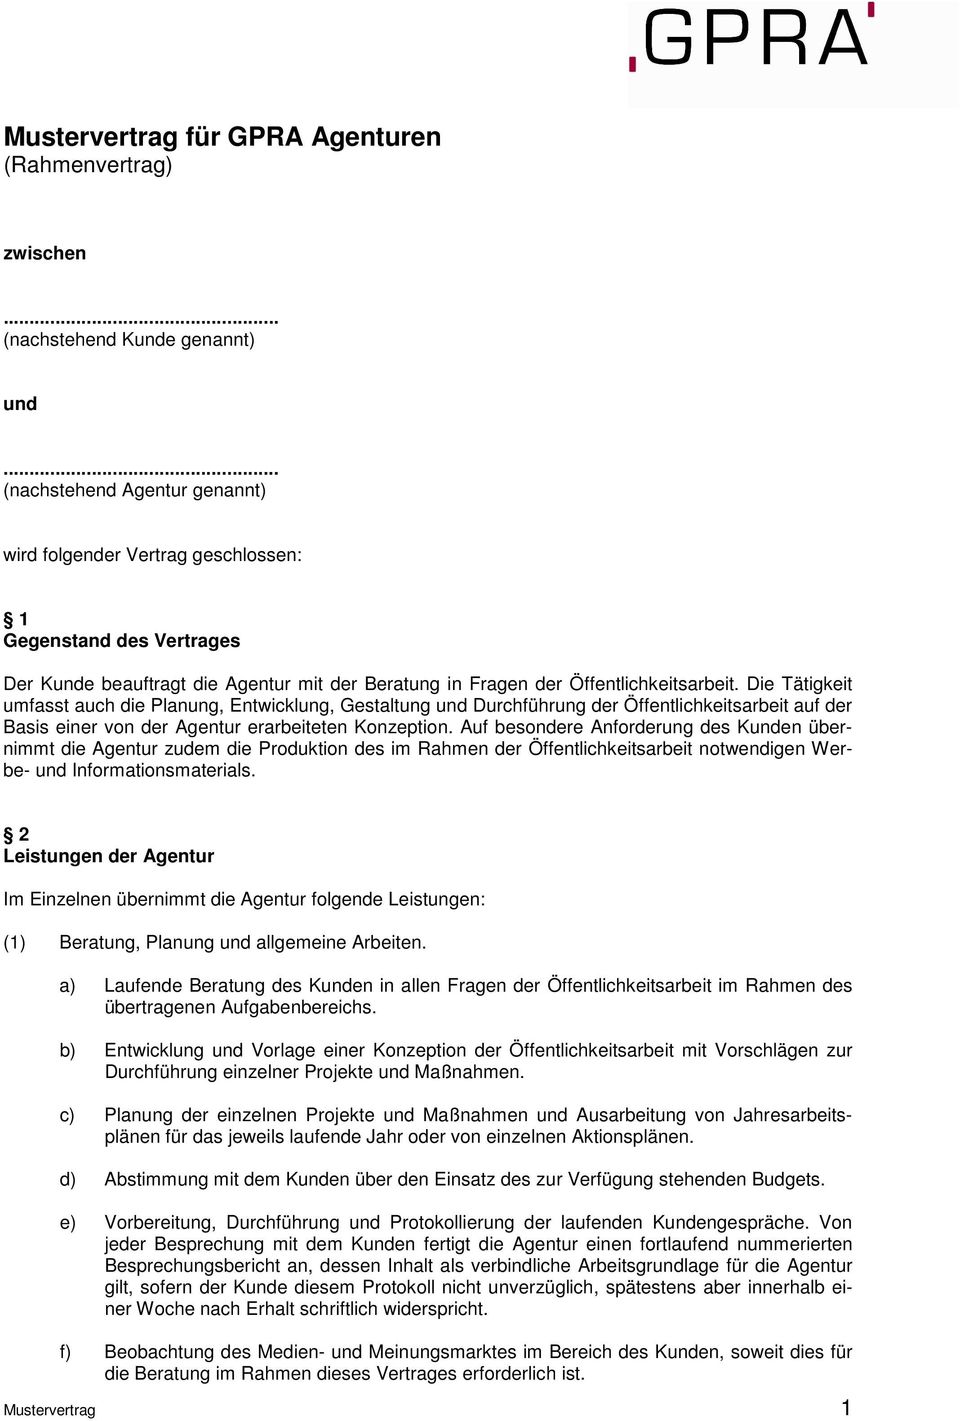 Mustervertrag Für Gpra Agenturen Rahmenvertrag Pdf